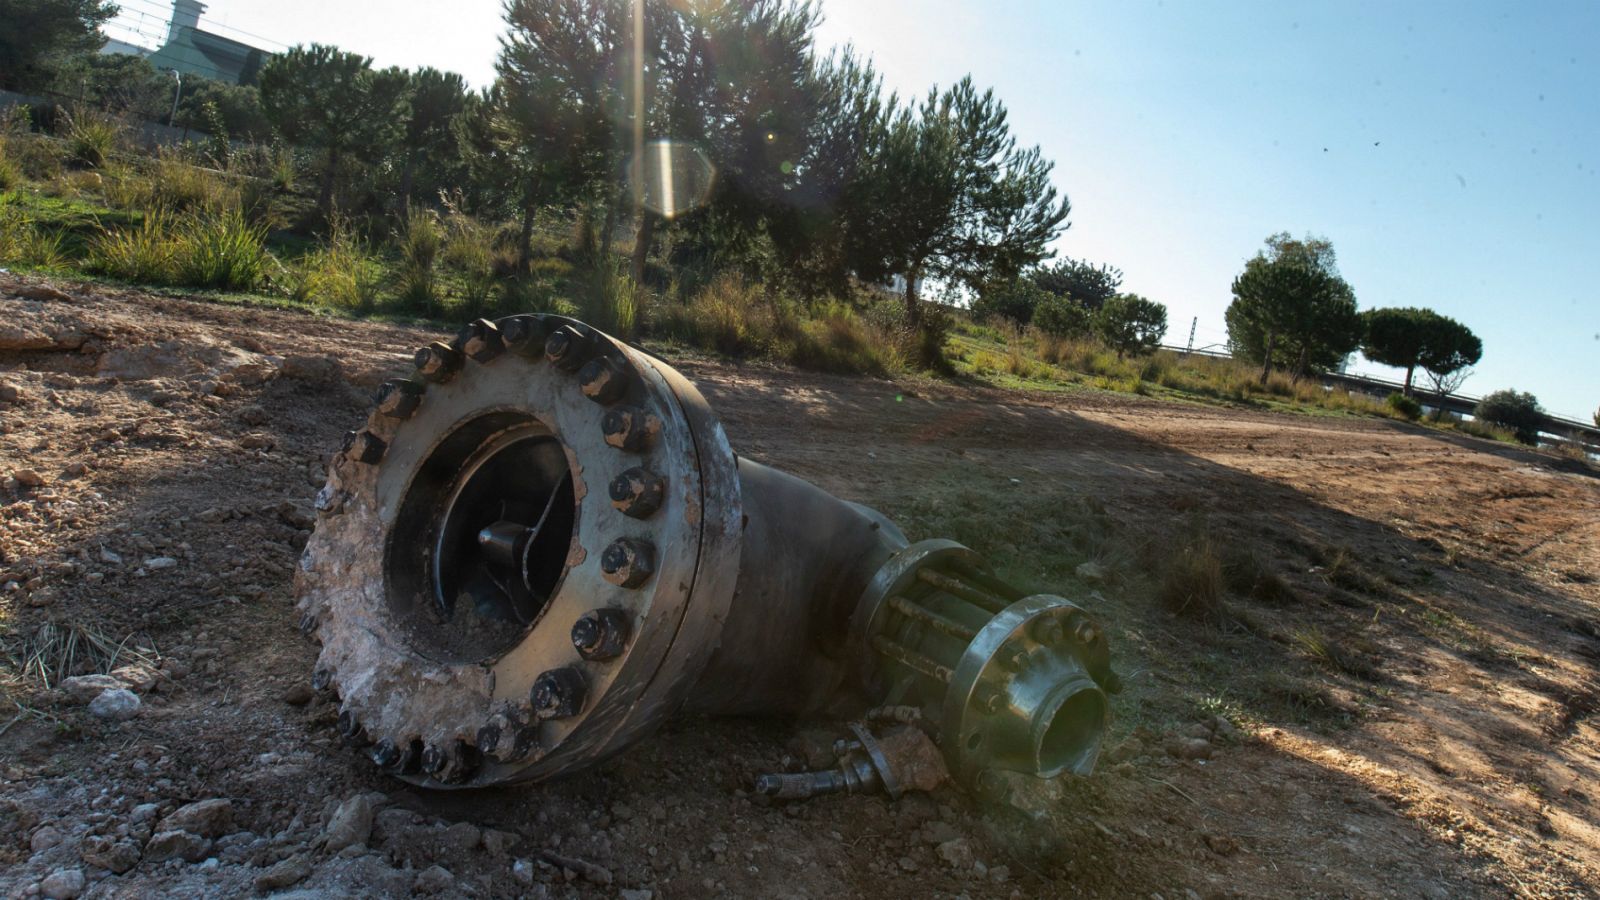 Tarragona - Los objetos desplazados por la explosión causan daños materiales en las proximidades - RTVE.es